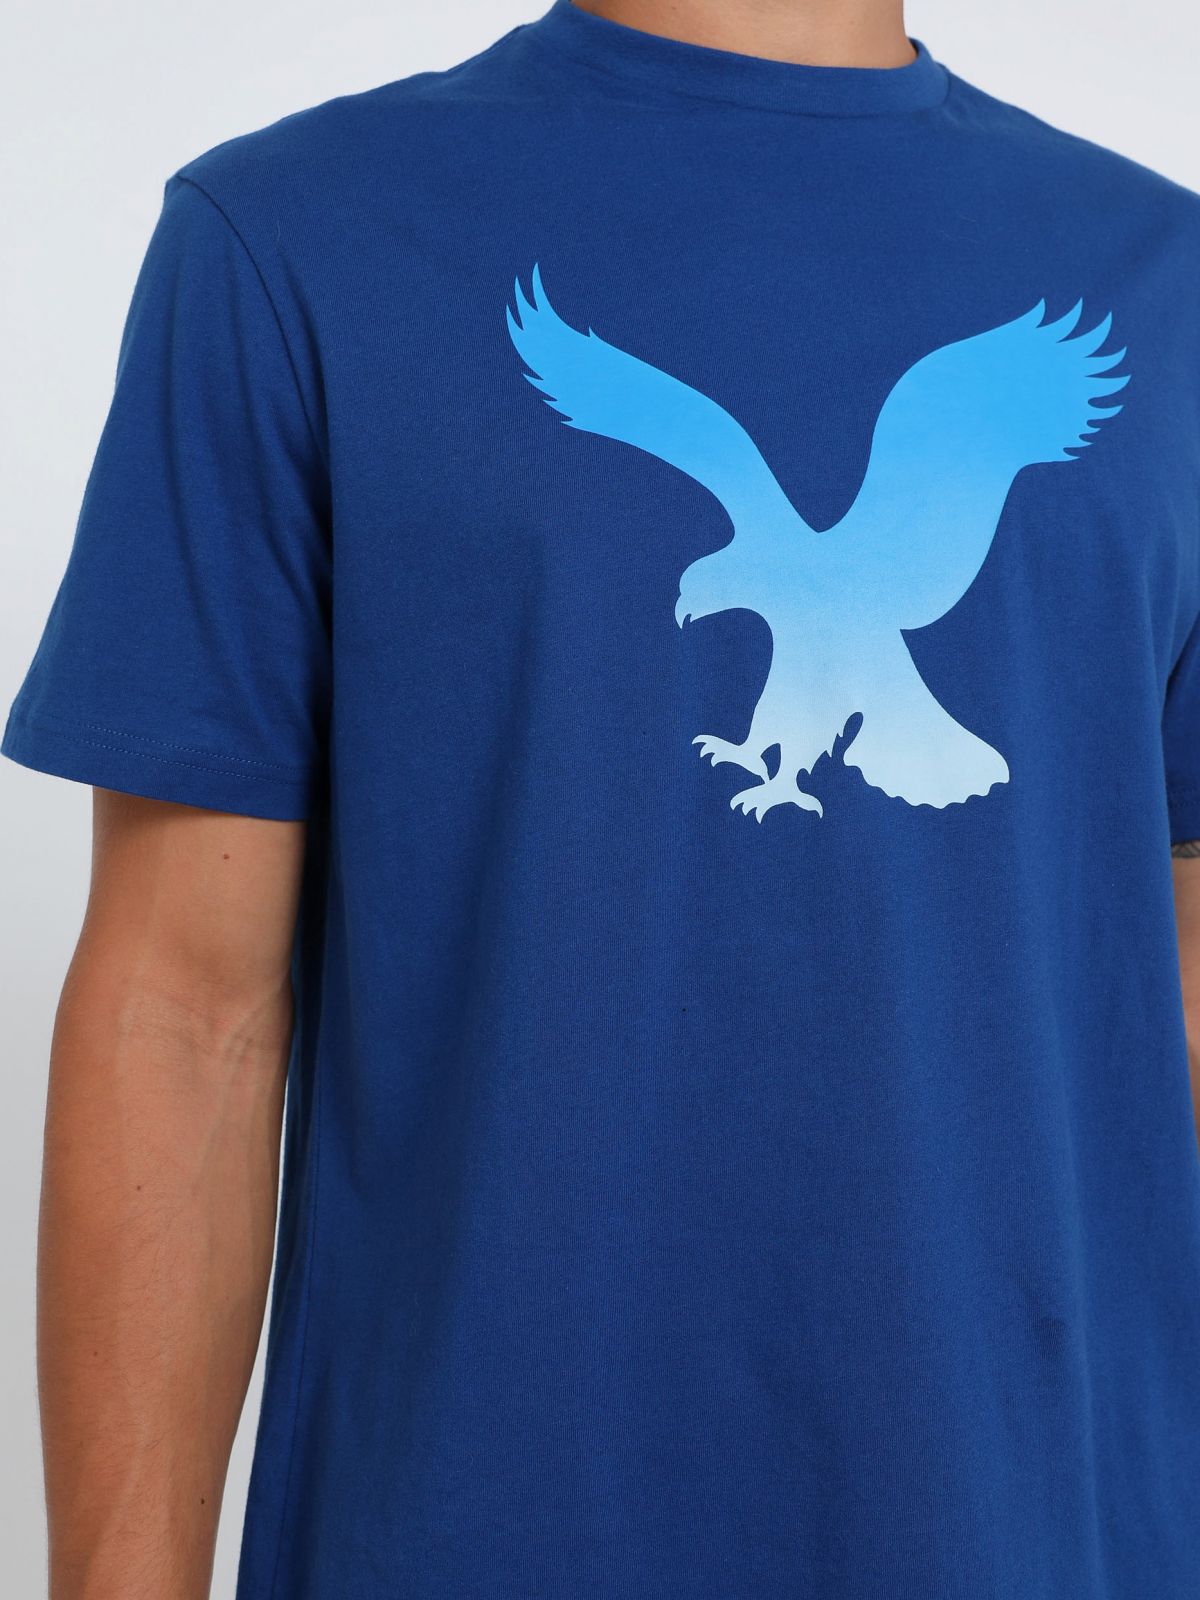  טי שירט עם הדפס לוגו של AMERICAN EAGLE